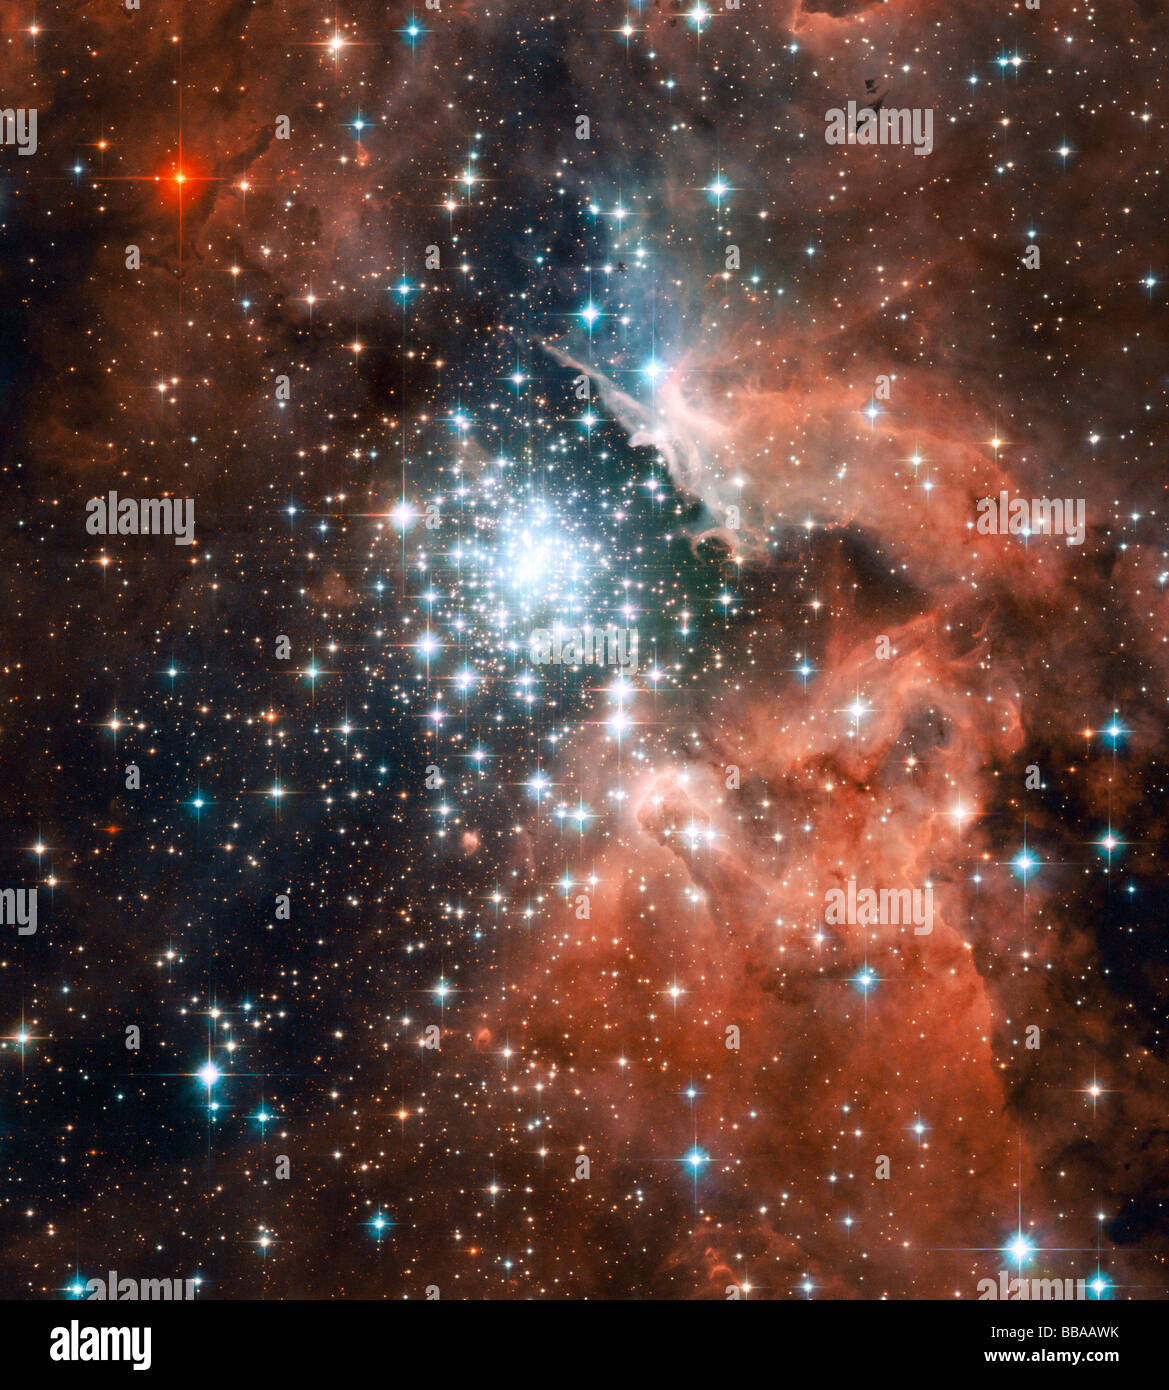 Galaxie vue par le télescope spatial Hubble de la NASA Banque D'Images